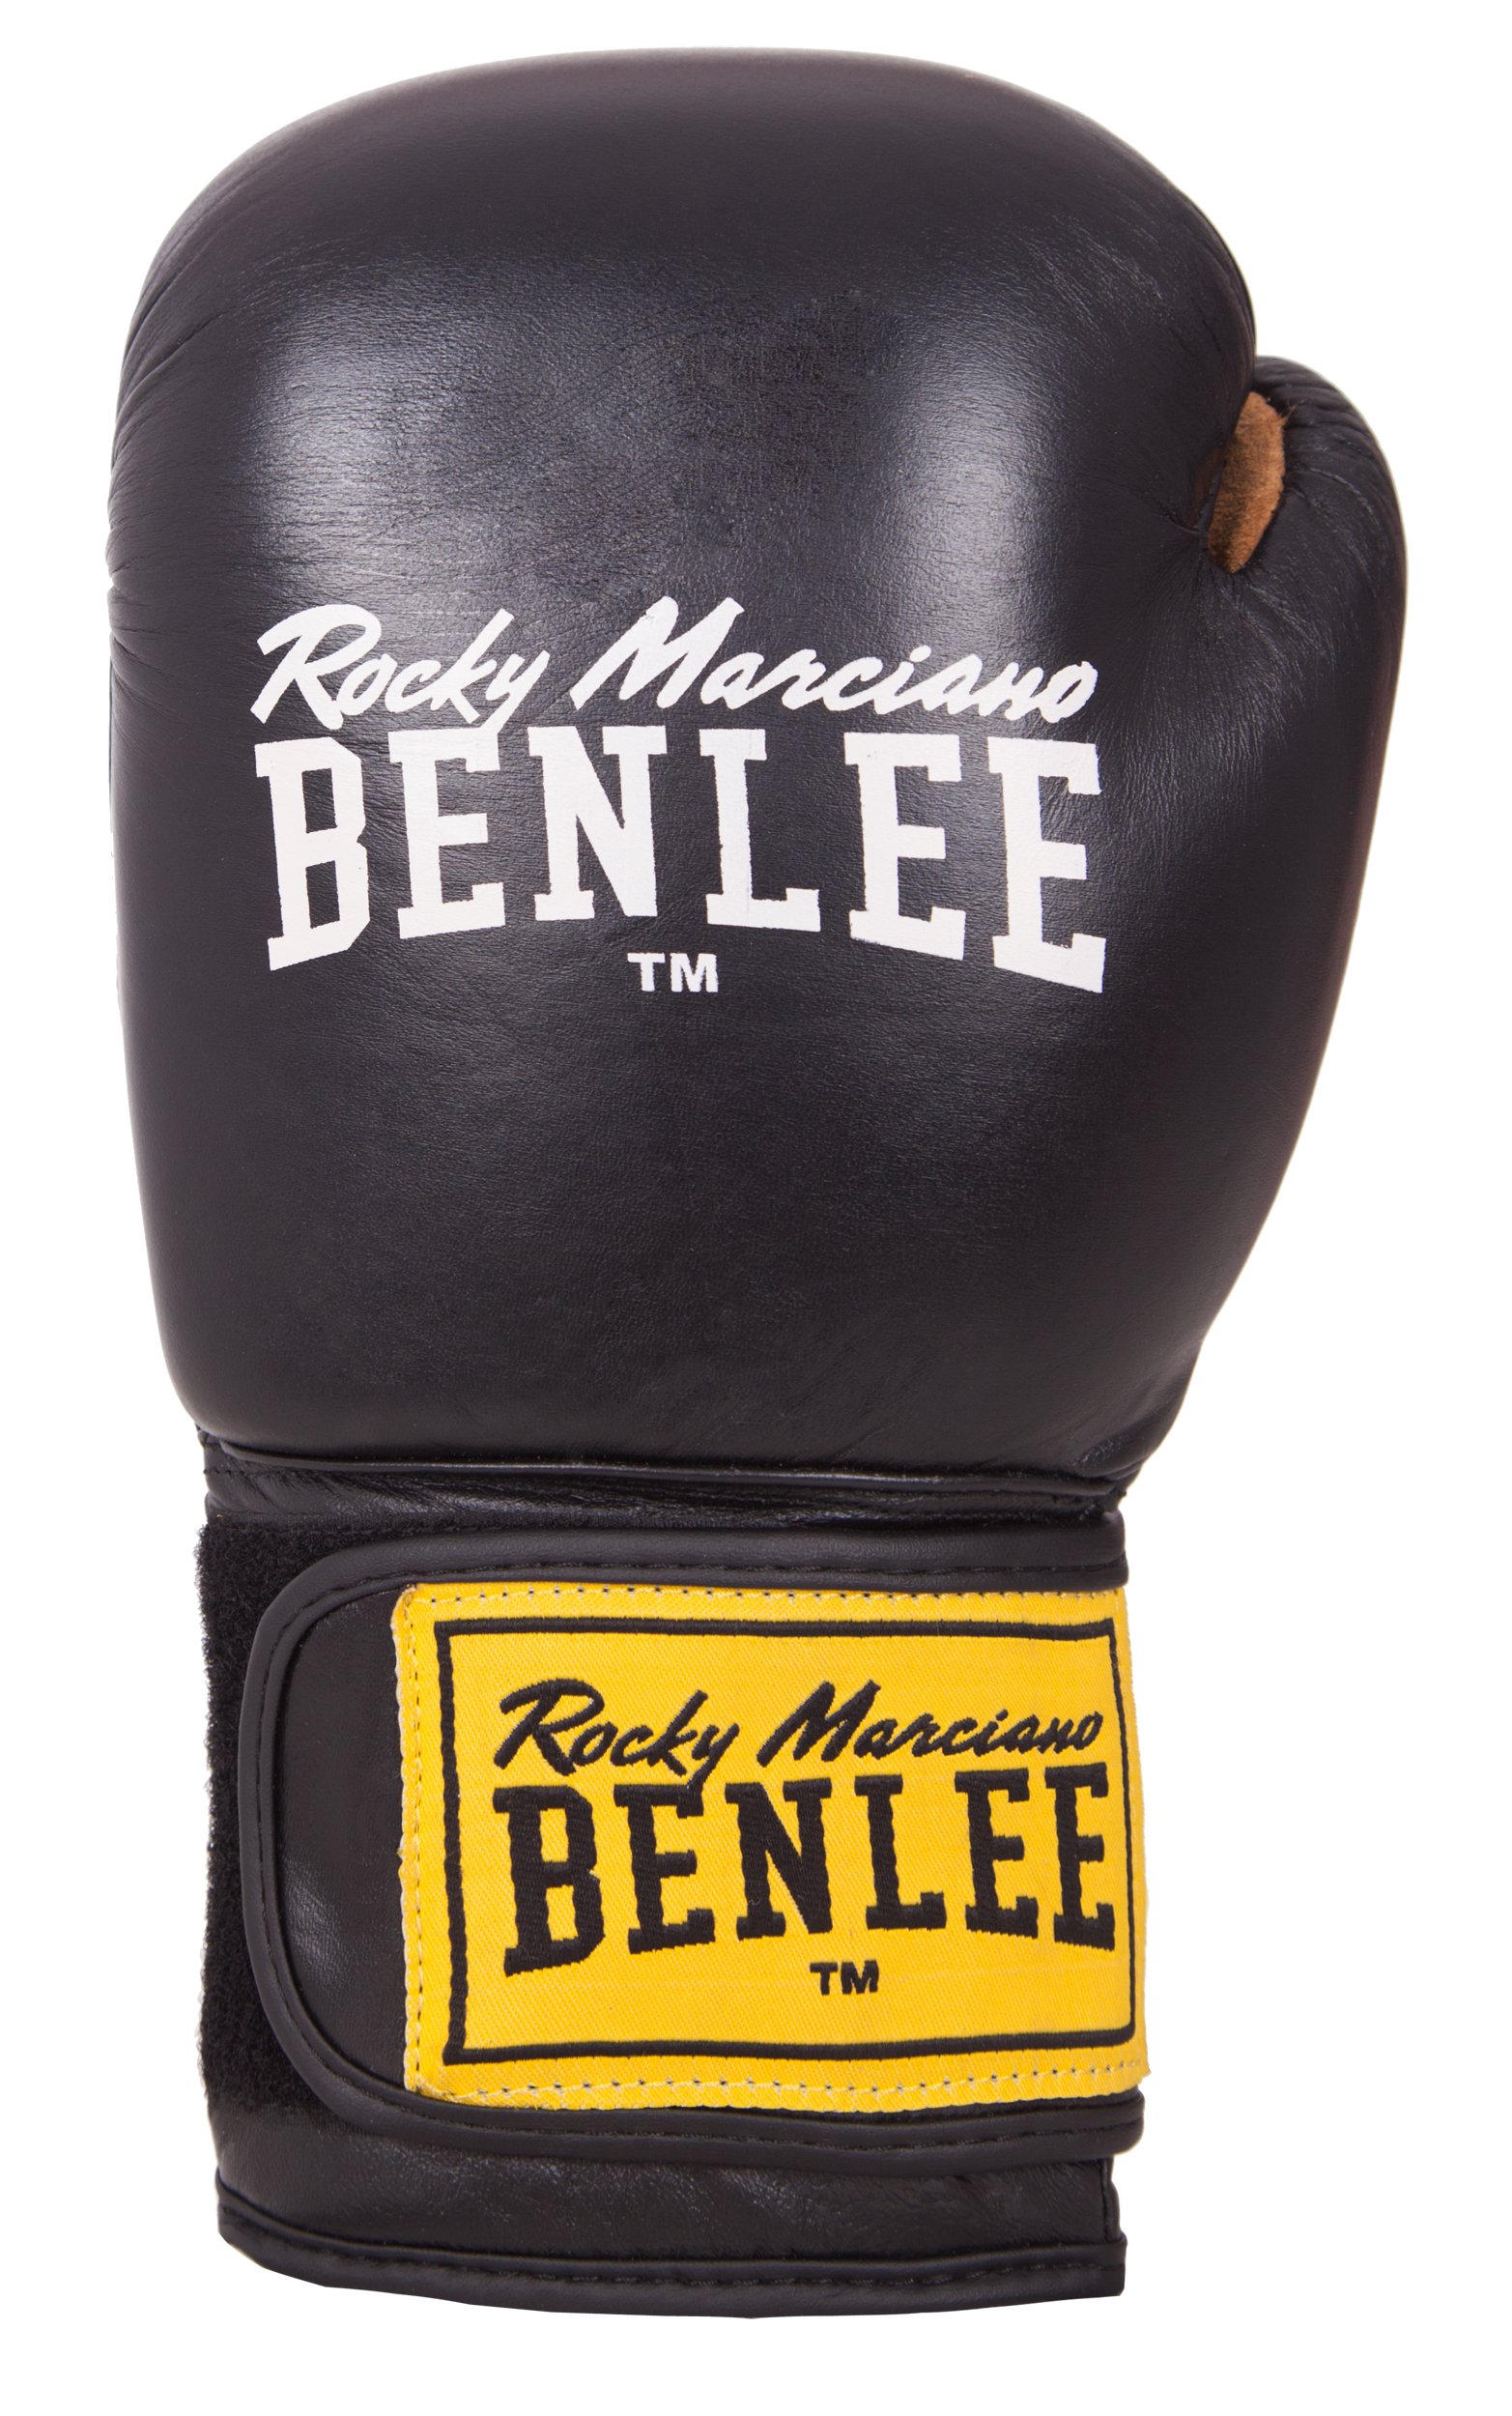 BENLEE Boxhandschuhe aus Leder (1 Paar) Evans Black 08 oz